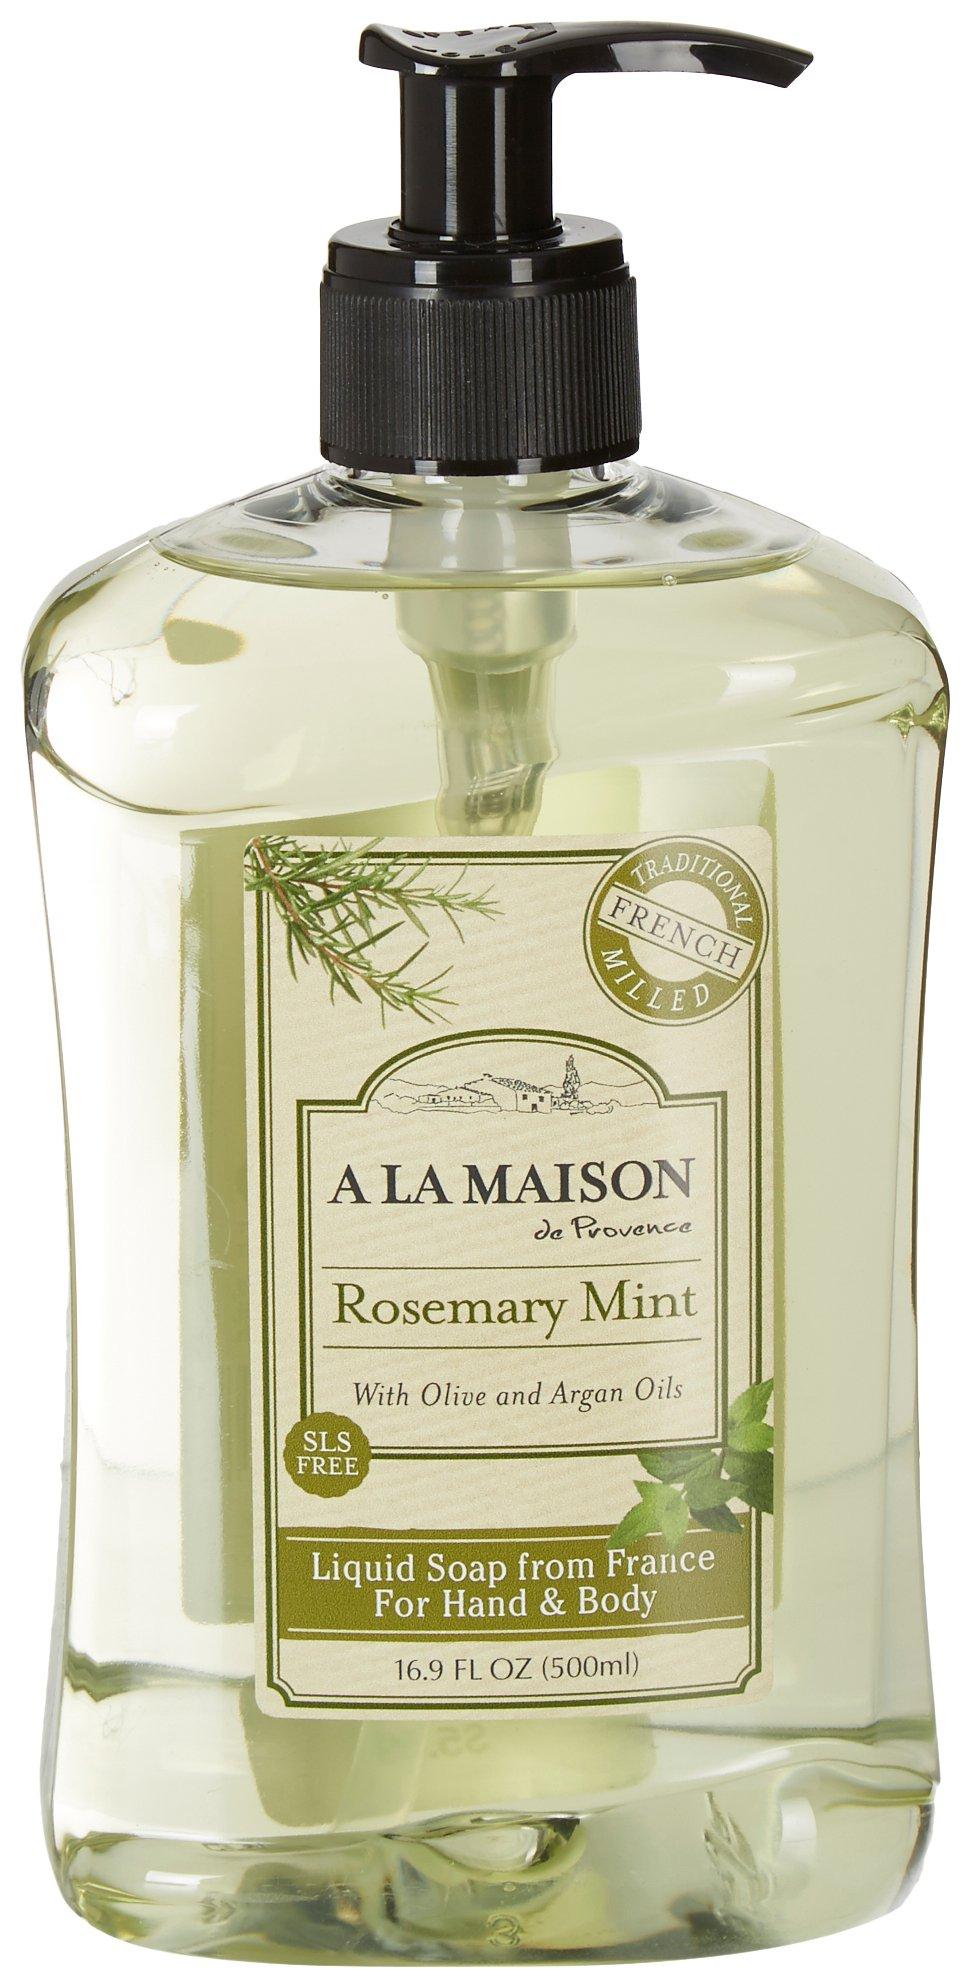 Rosemary Mint Hand & Body Liquid Soap